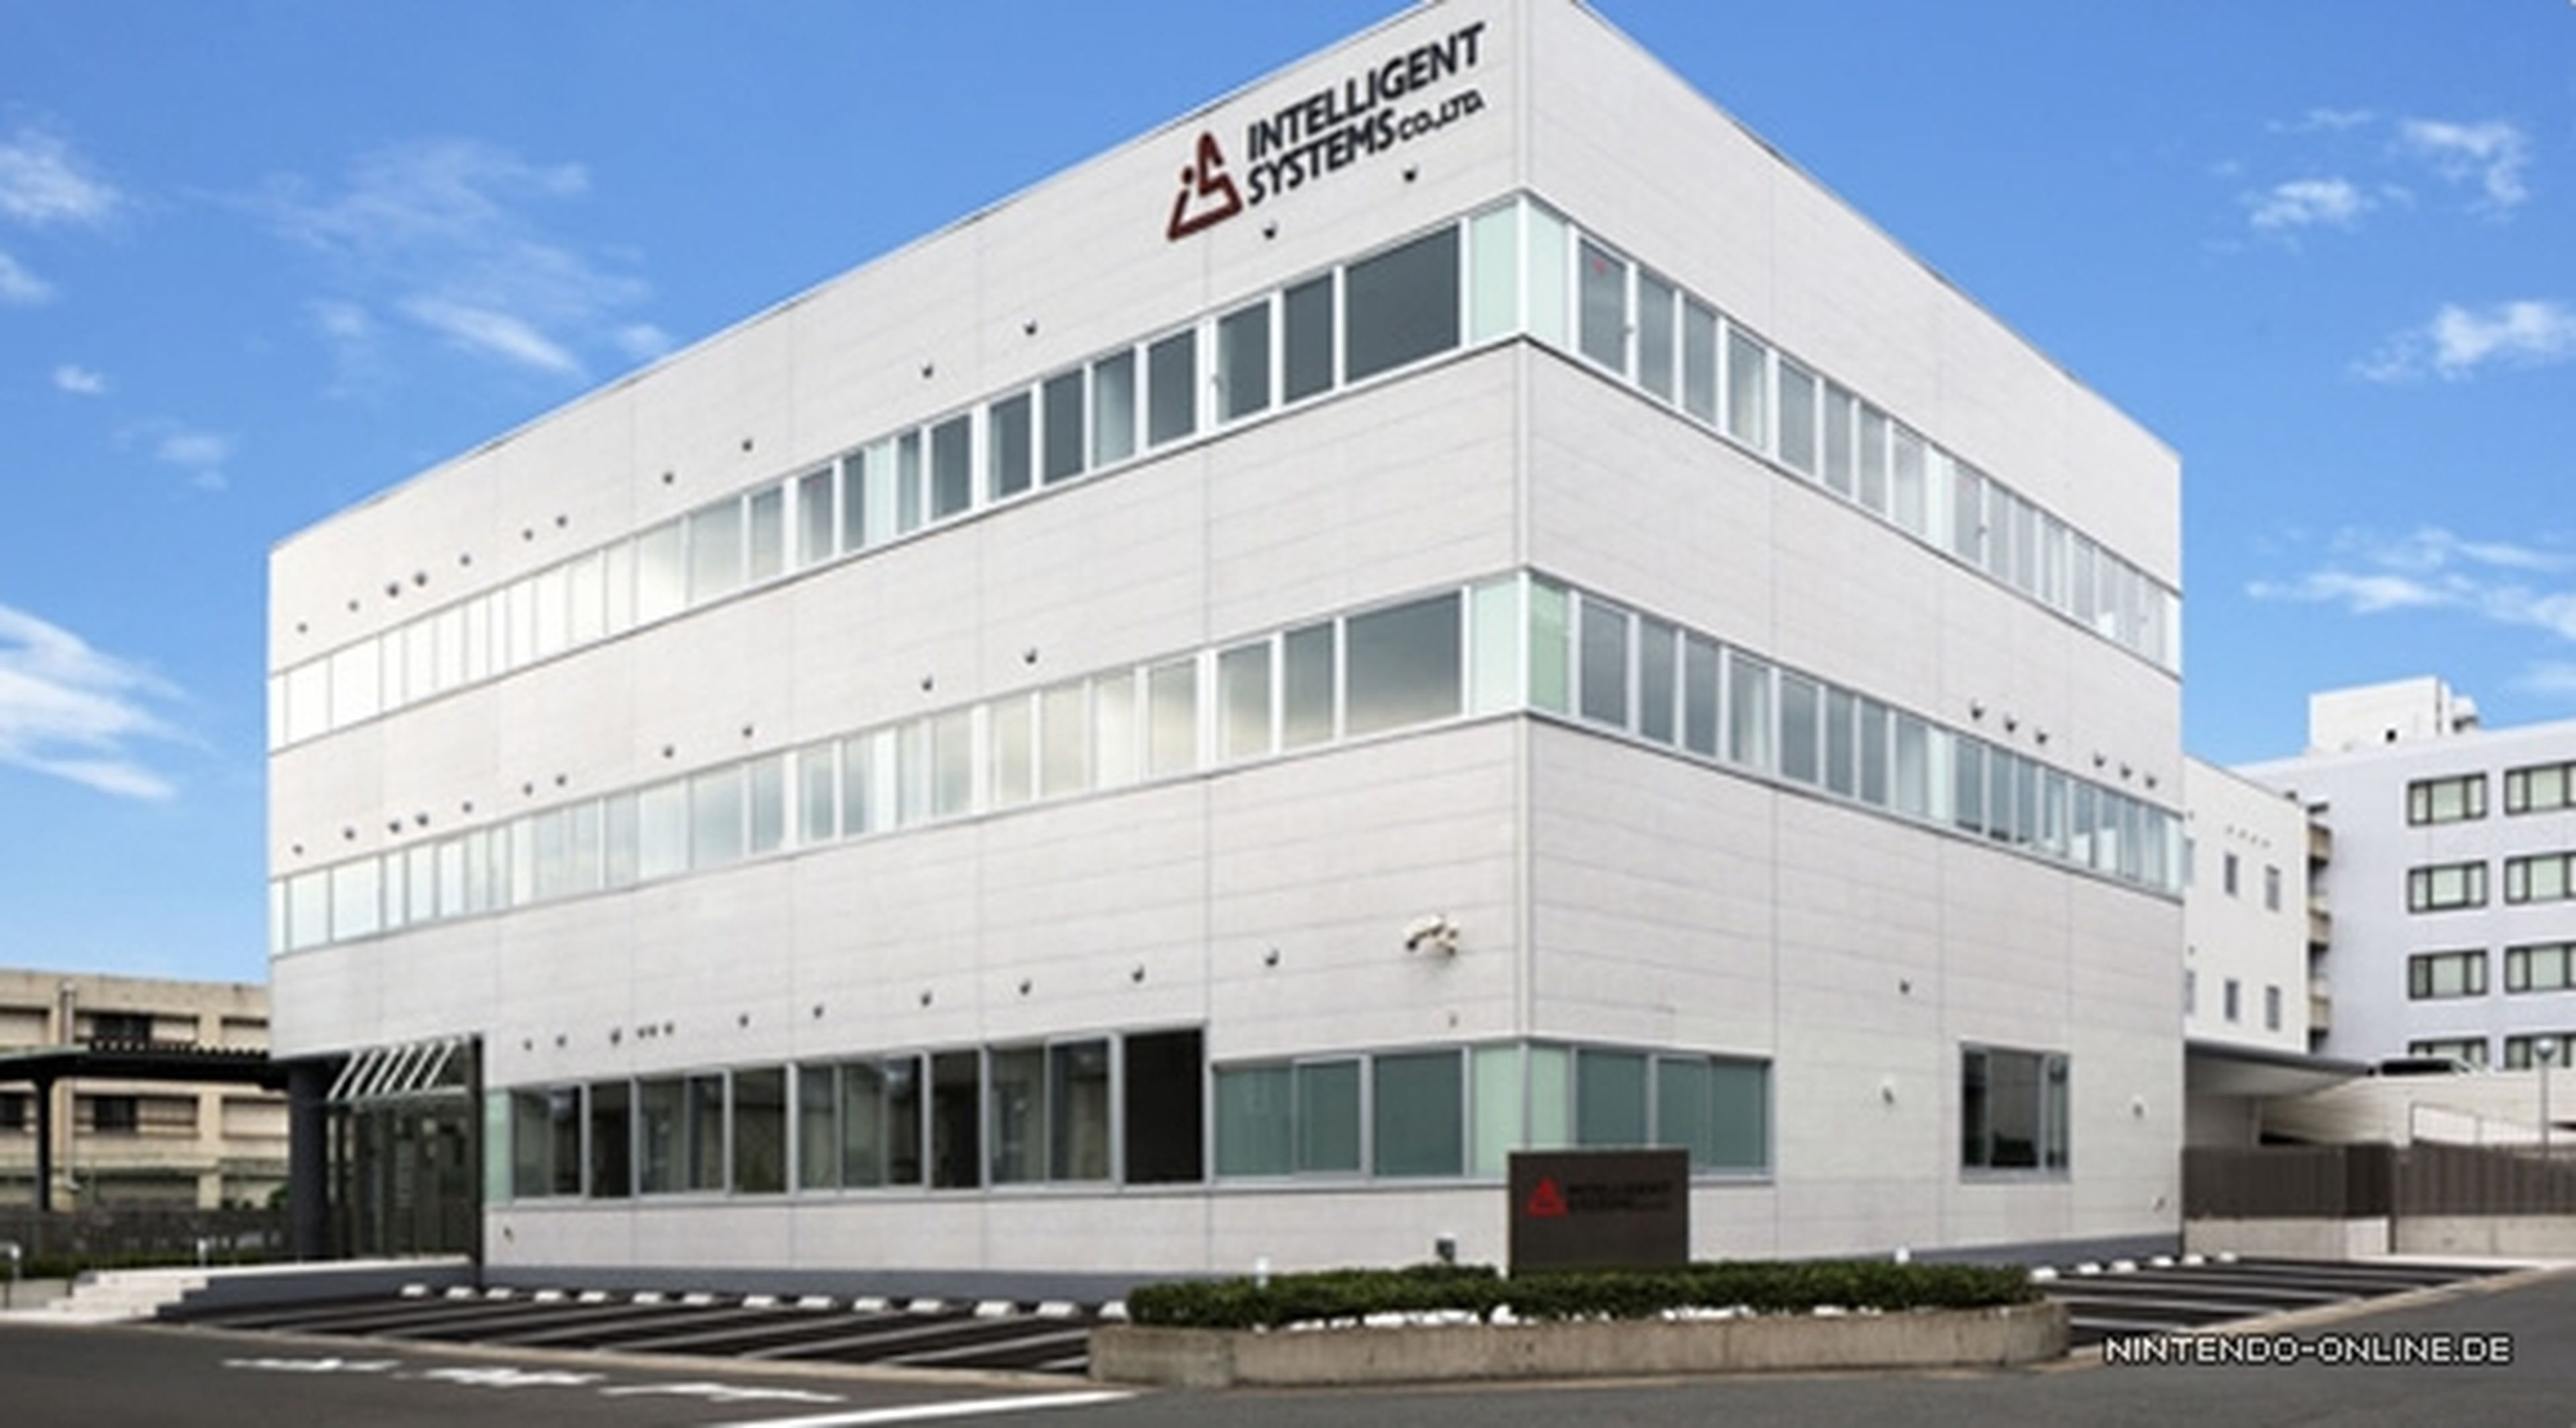 Intelligent Systems también estrena nueva sede en Kioto